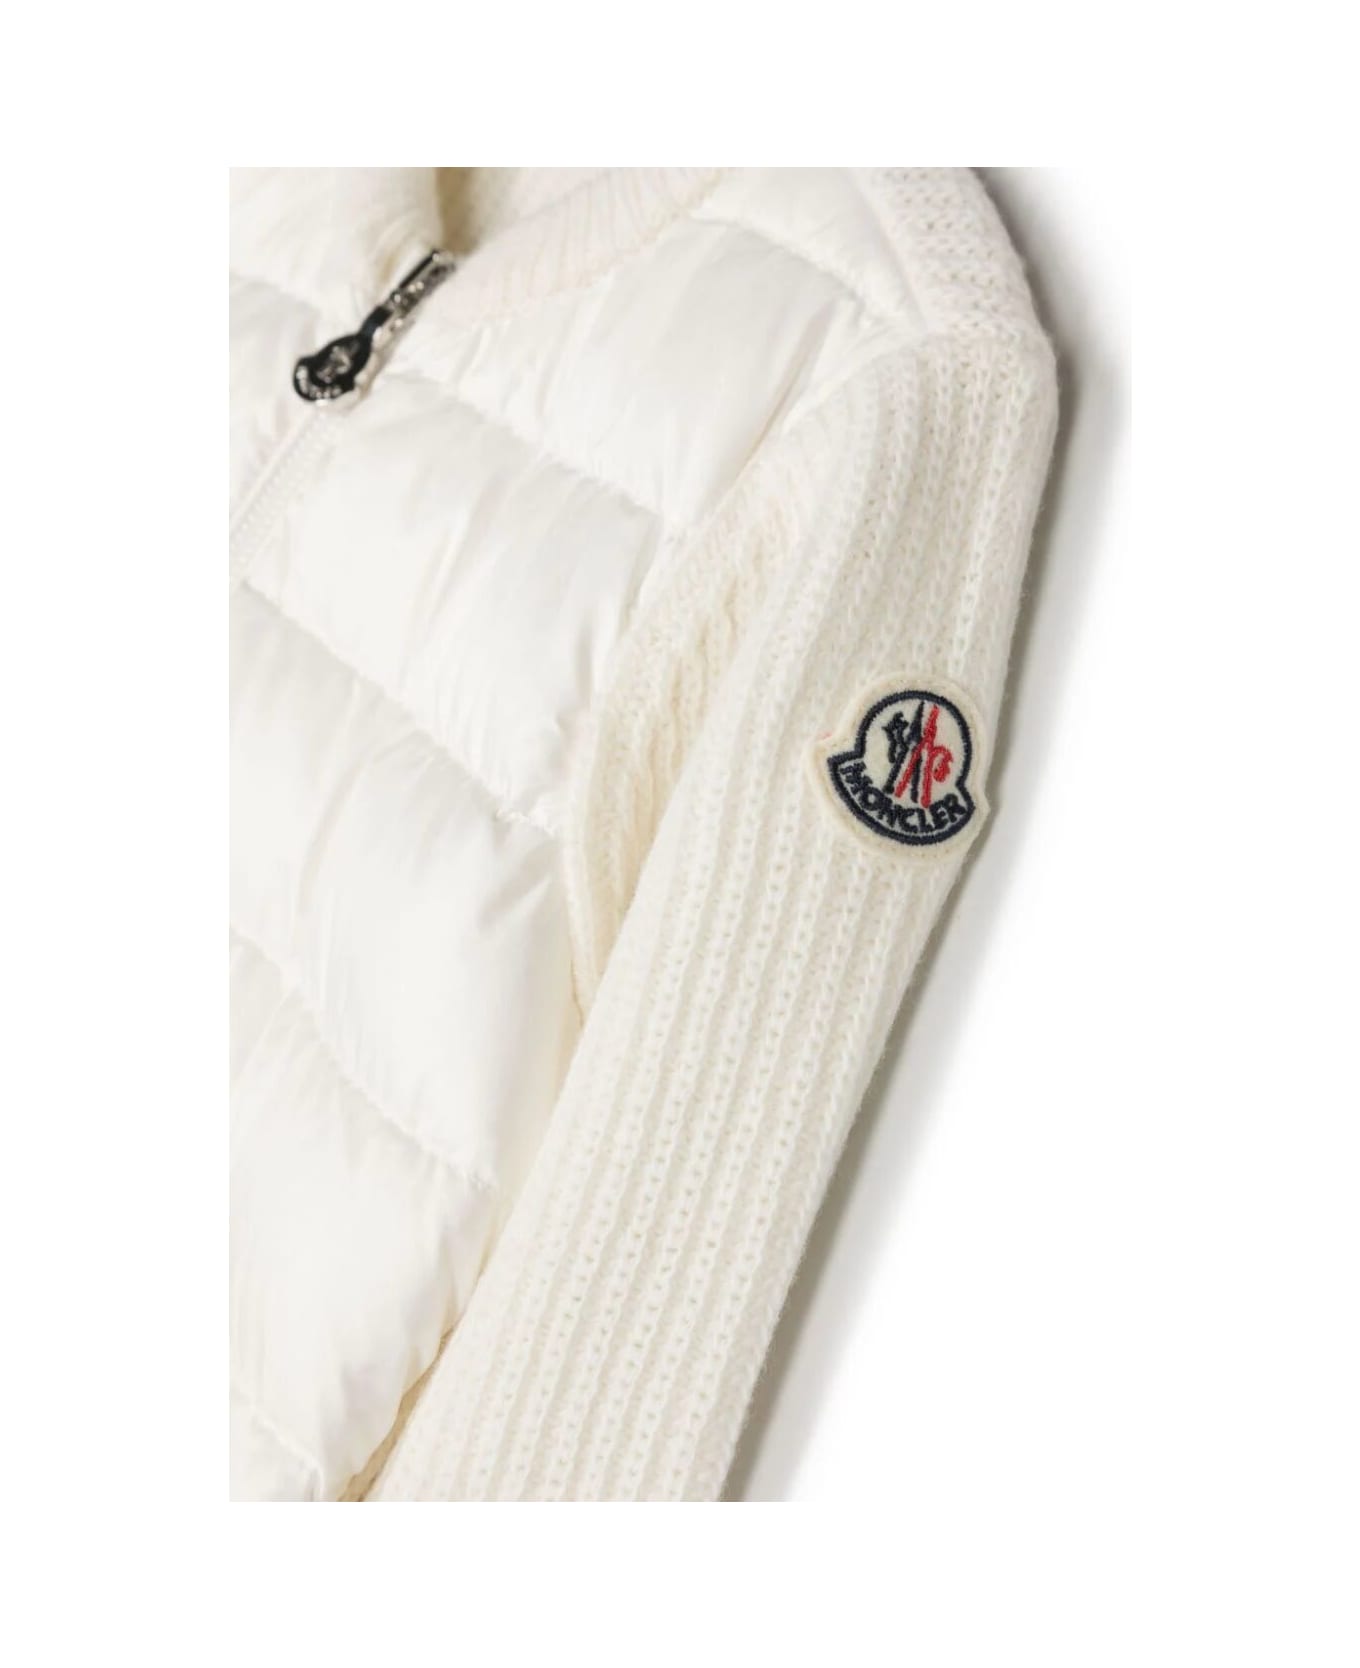 Moncler Cardigan - White ニットウェア＆スウェットシャツ